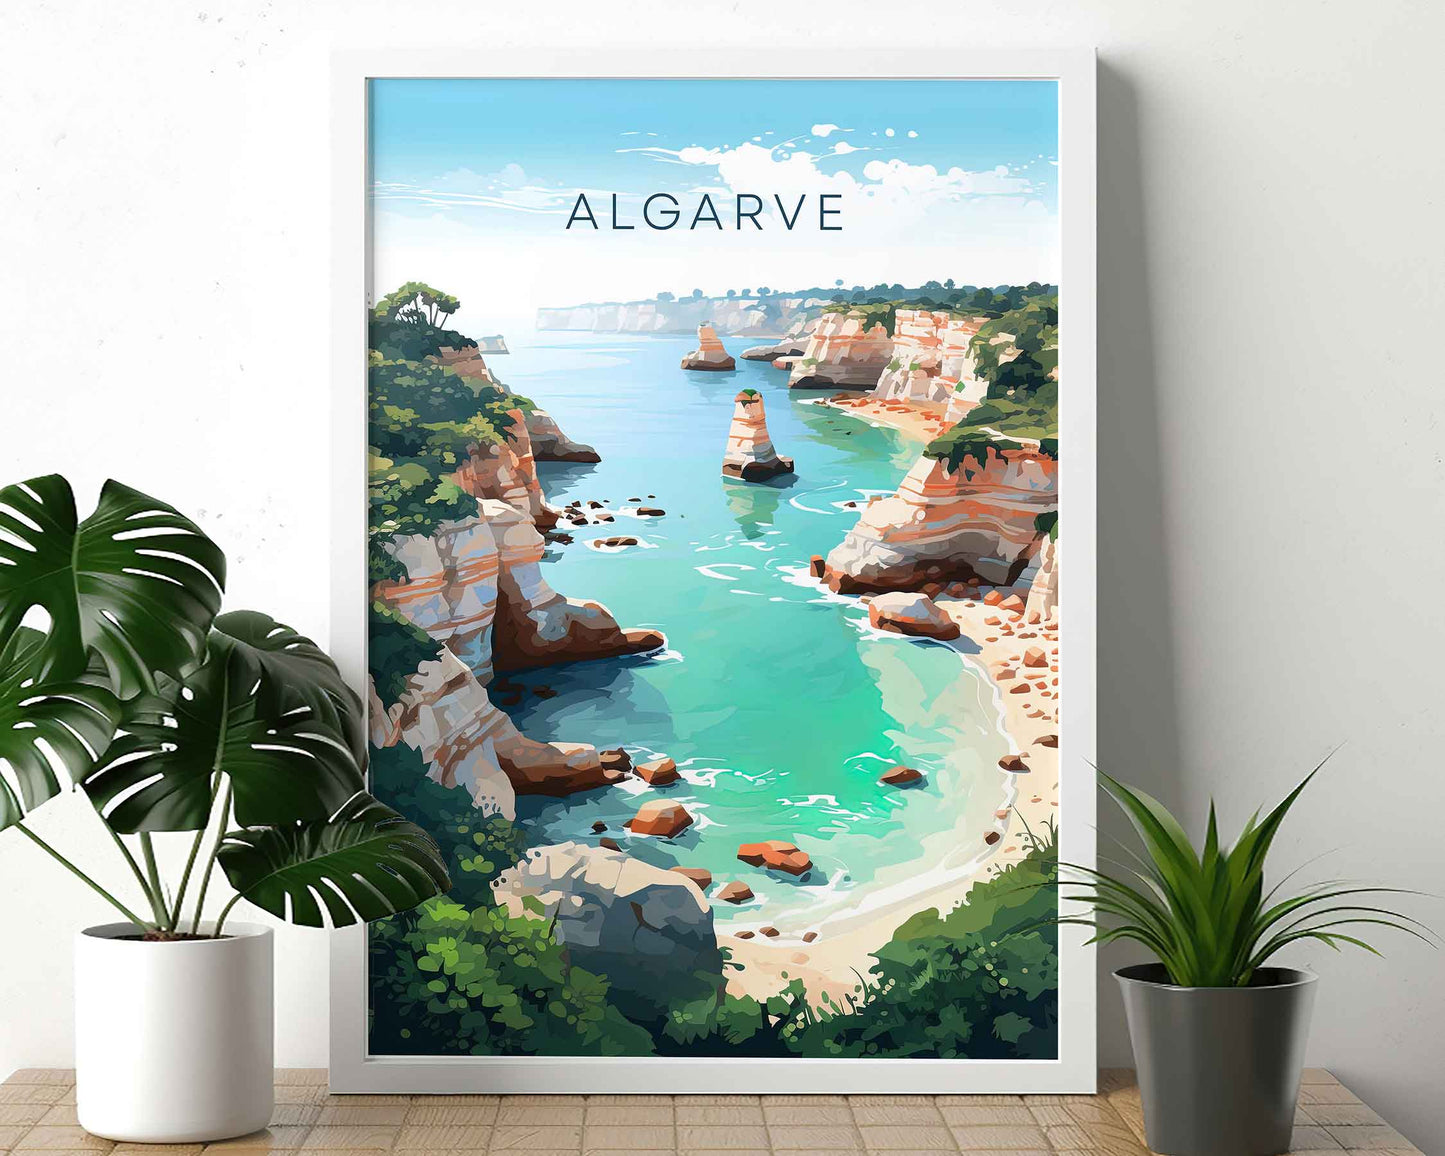 Framed Image of Algarve Wall Art Portugal Travel Poster Prints Illustration